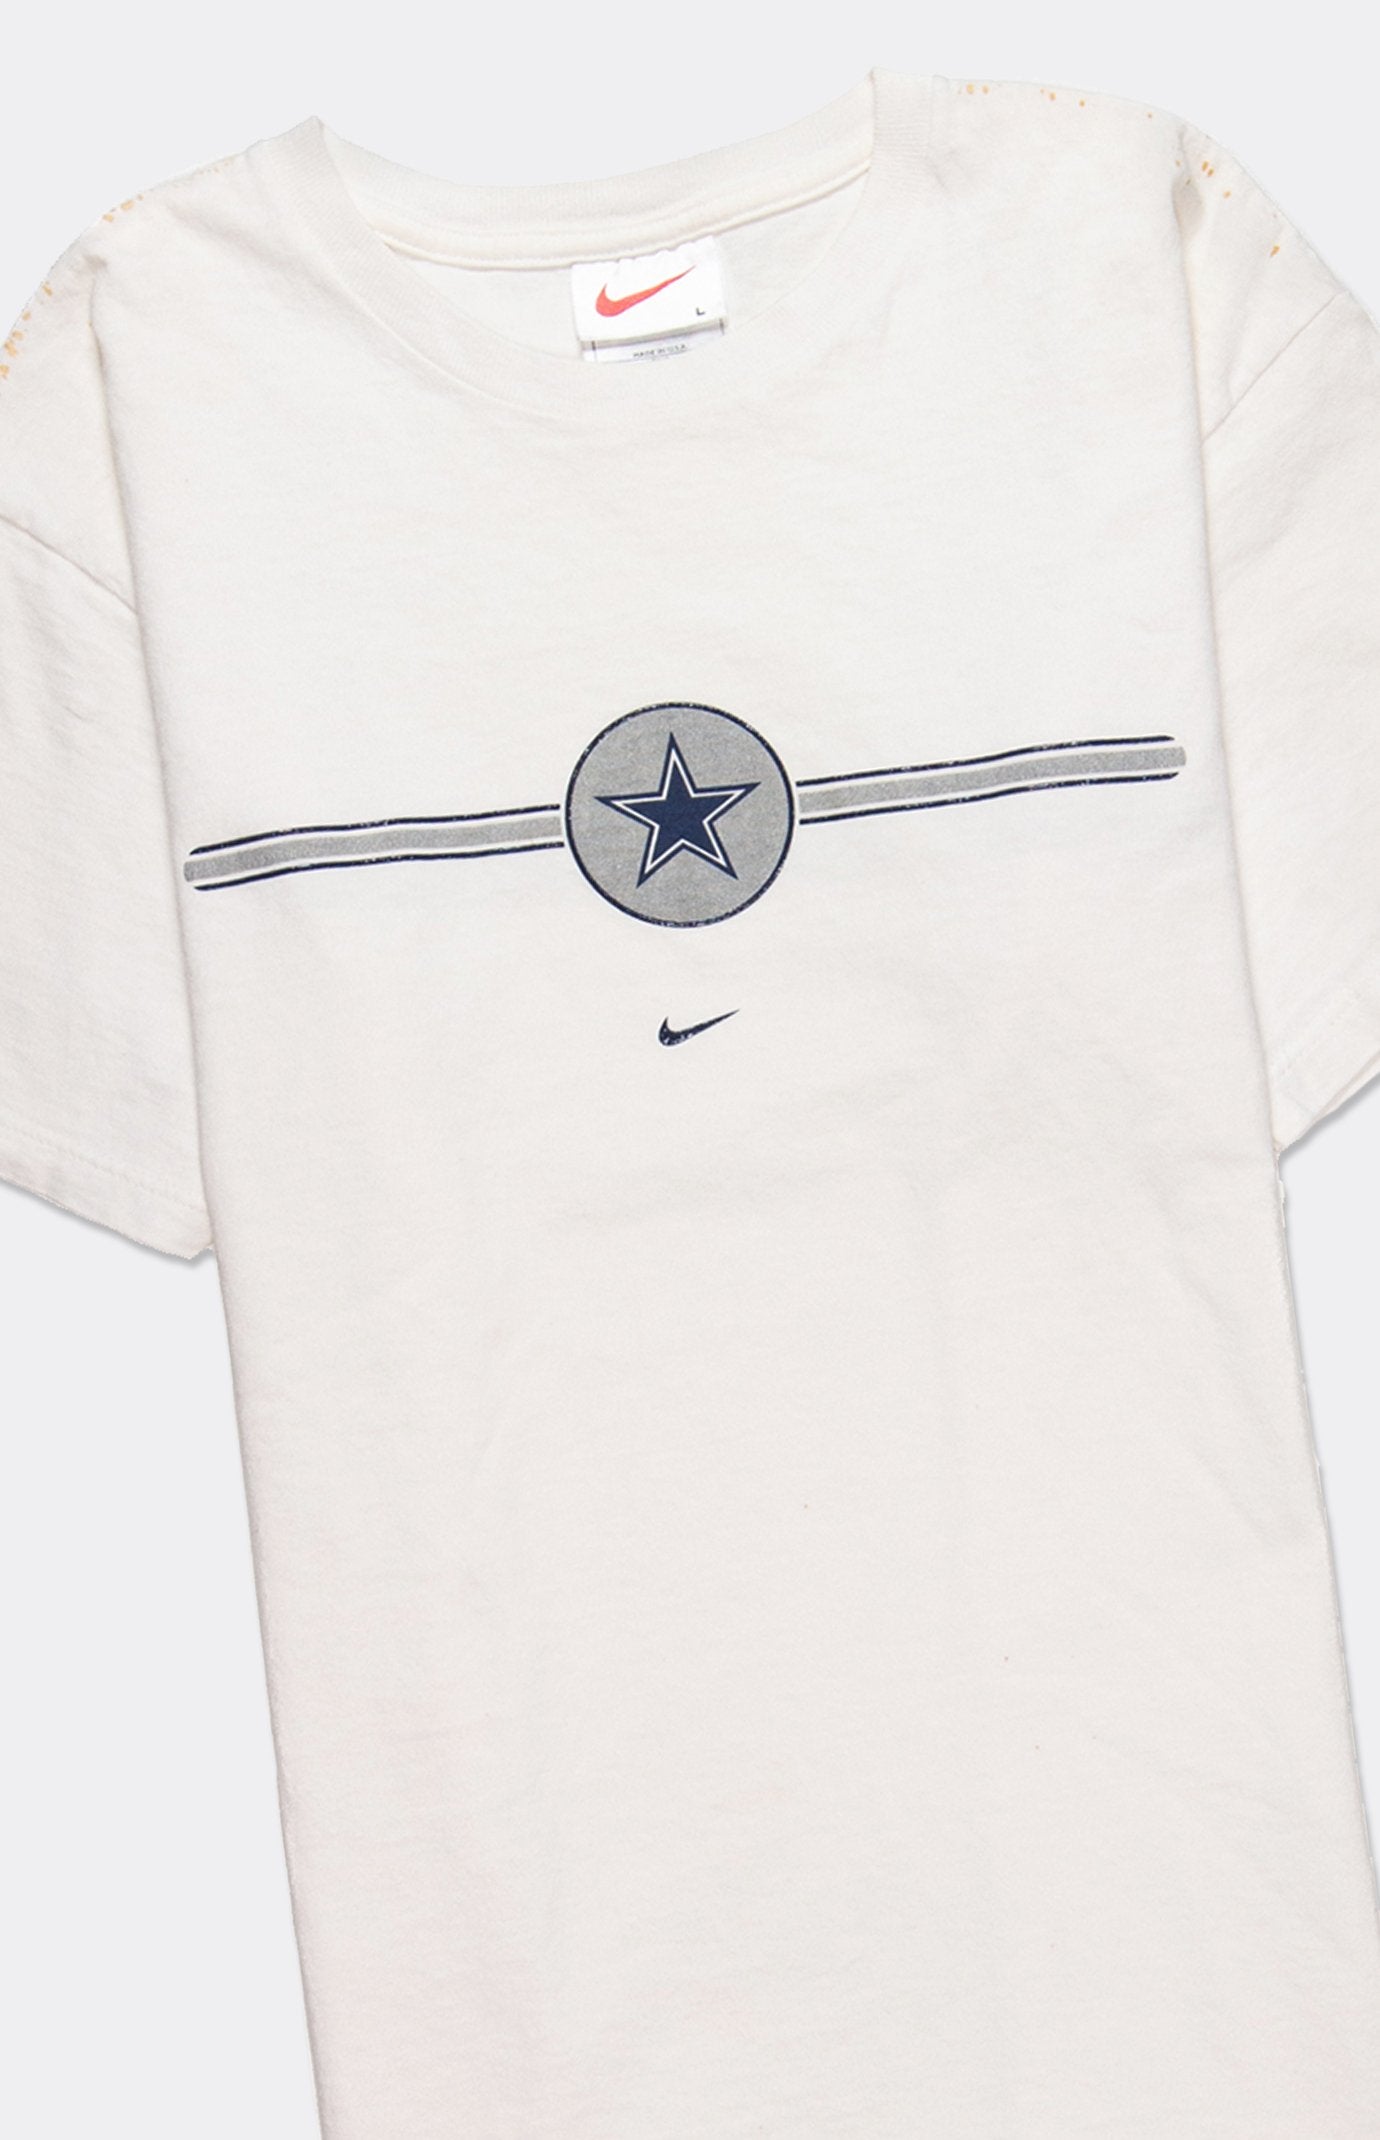 Nike Cowboys tee - シャツ